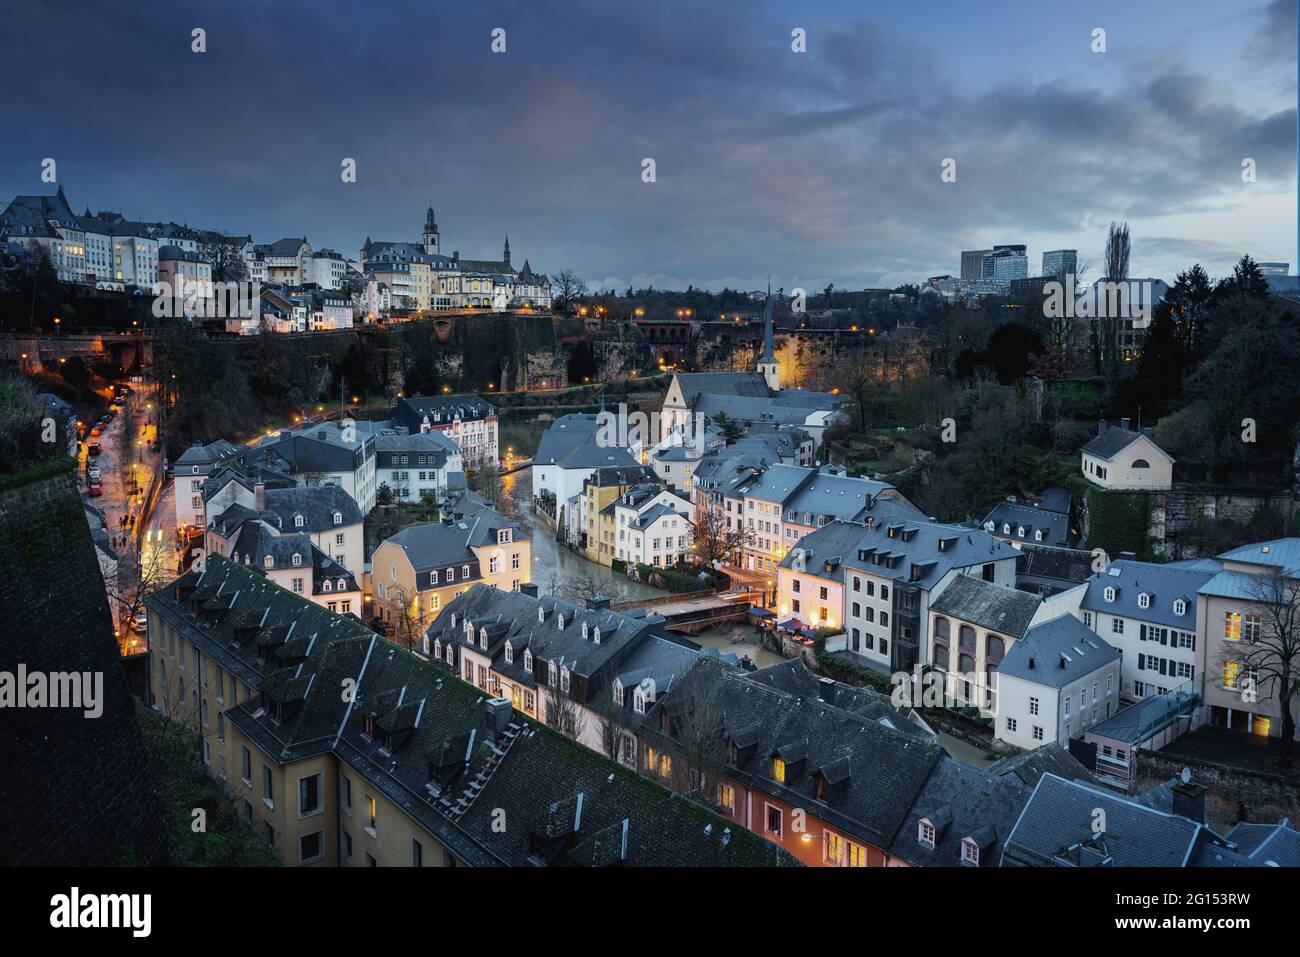 Skyline von Luxemburg bei Nacht - Luftaufnahme des Grund mit St. Michaels Kirche im Hintergrund - Luxemburg City, Luxemburg Stockfoto